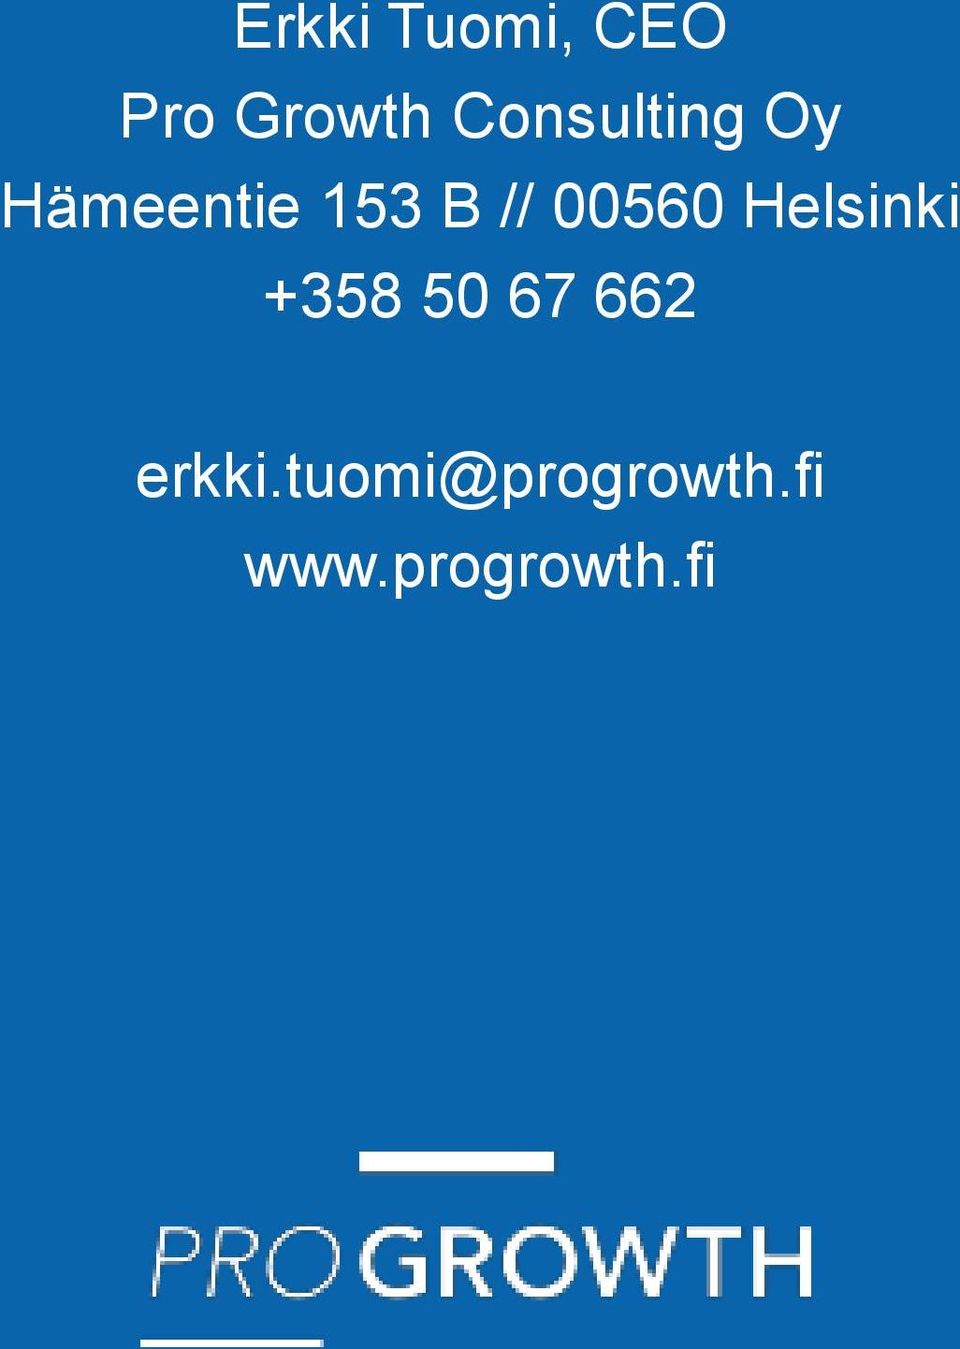 00560 Helsinki +358 50 67 662